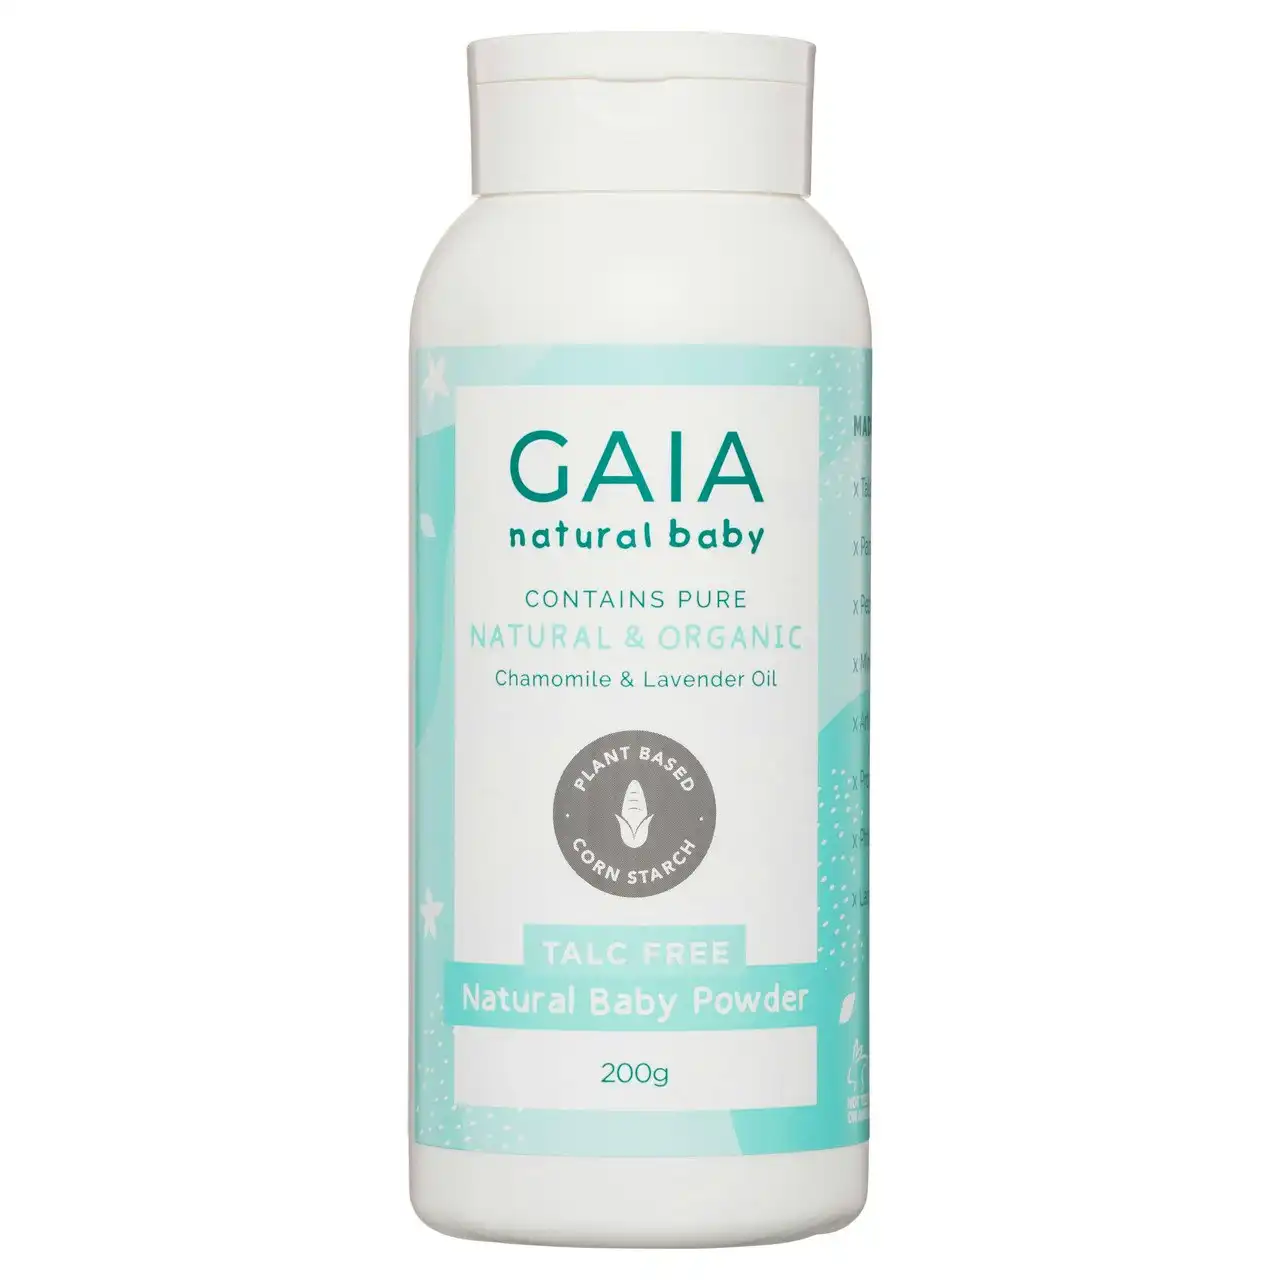 Gaia Talc Free Natural Baby Powder 200g